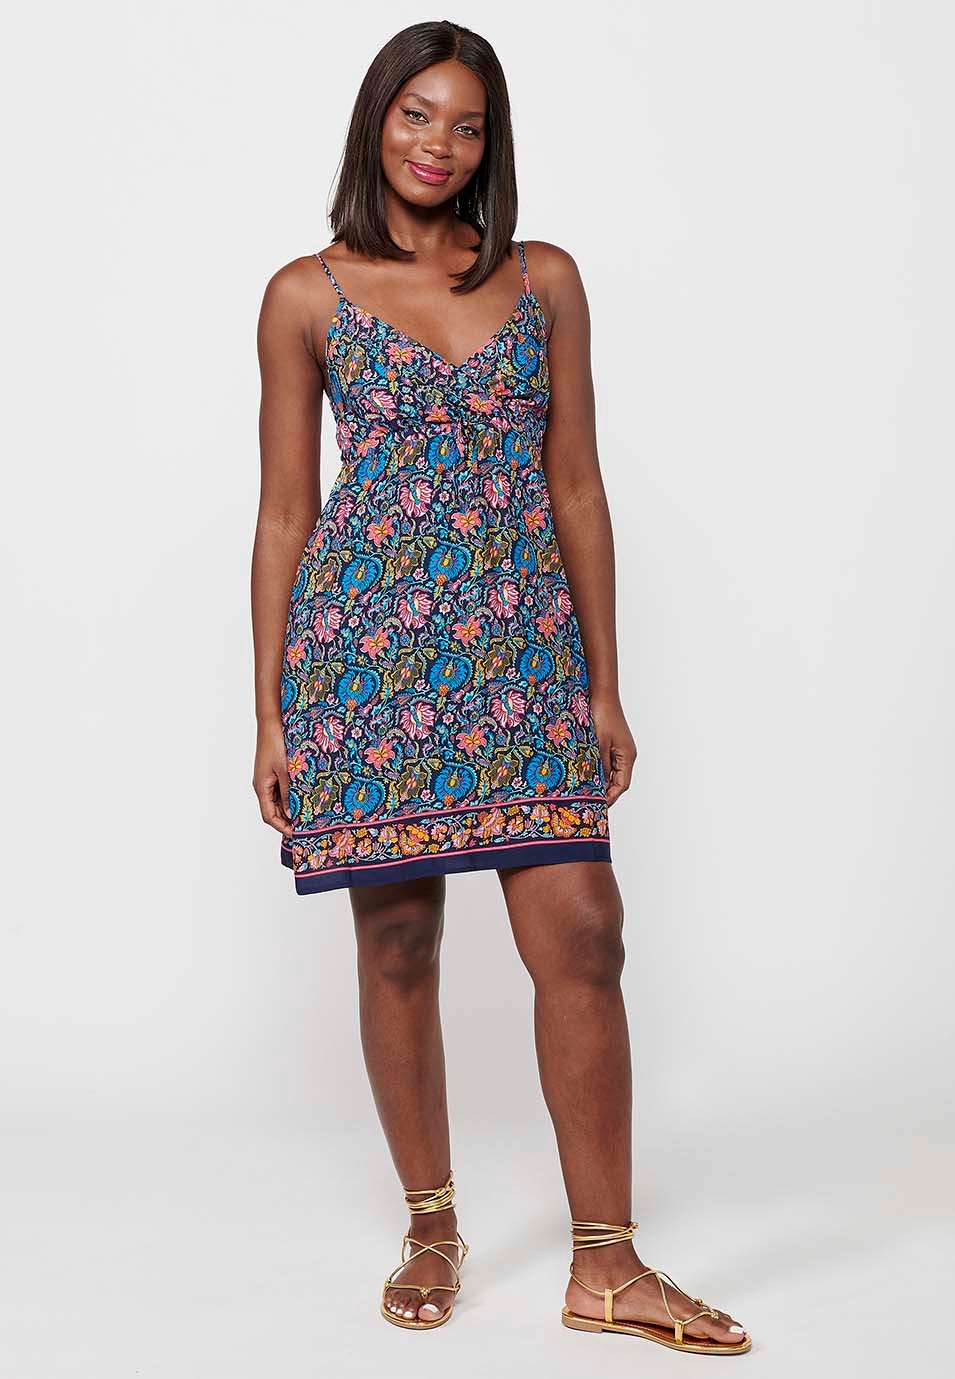 Damen-Kurzkleid mit mehrfarbigem Blumendruck, V-Ausschnitt und Trägern